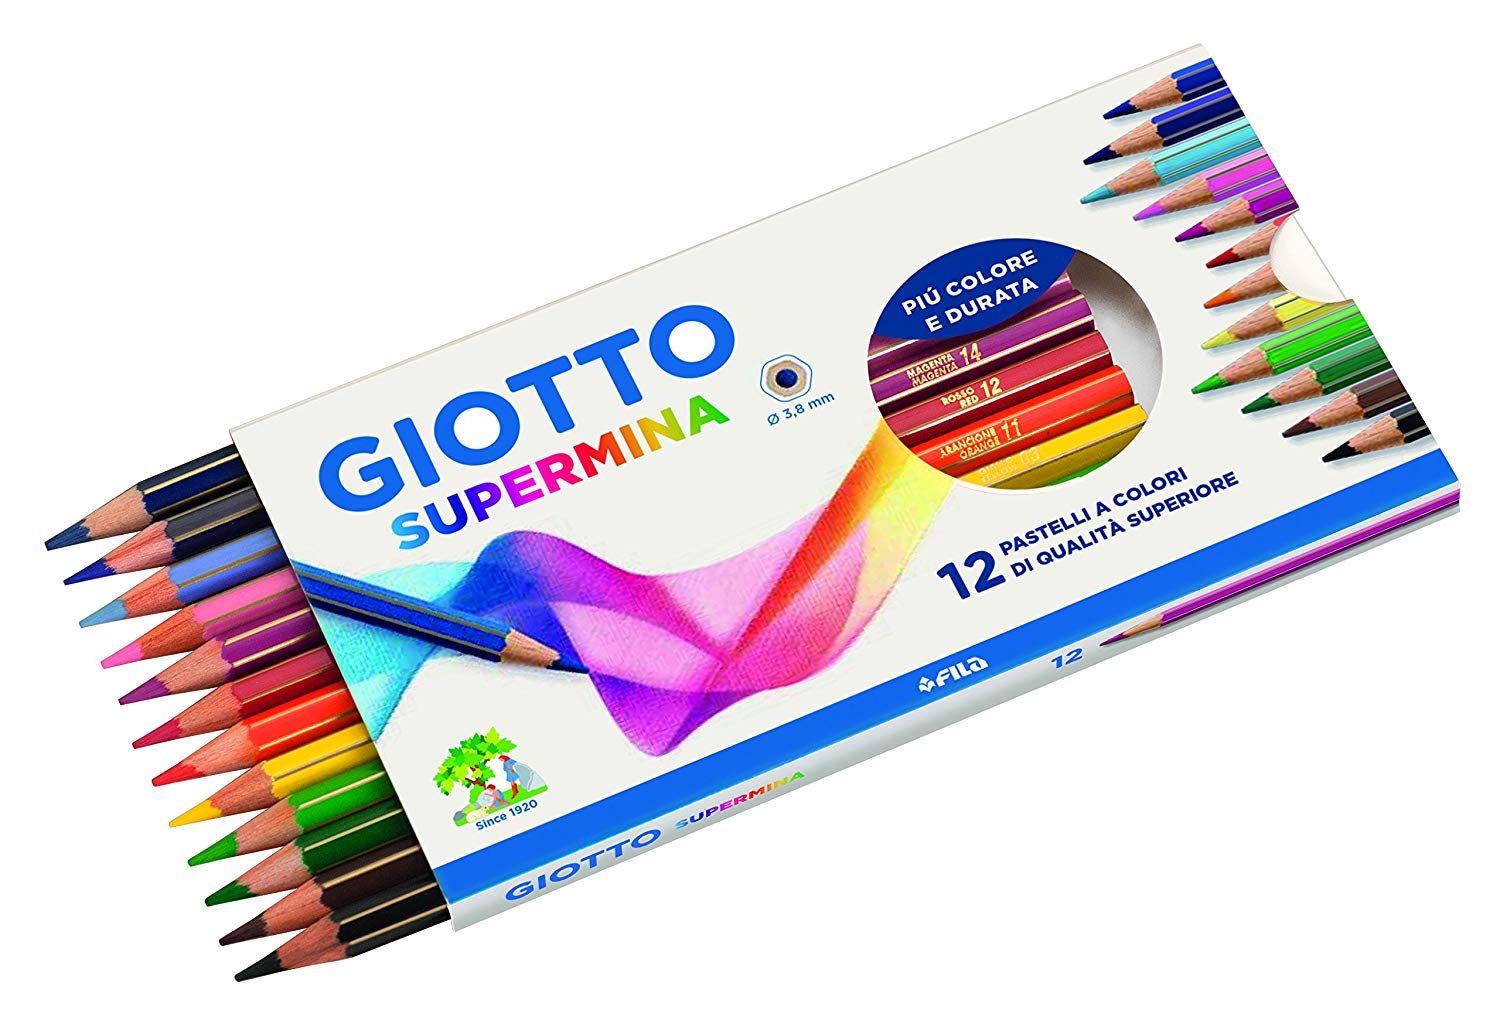 Matite Colorate Giotto Supermina 12pz